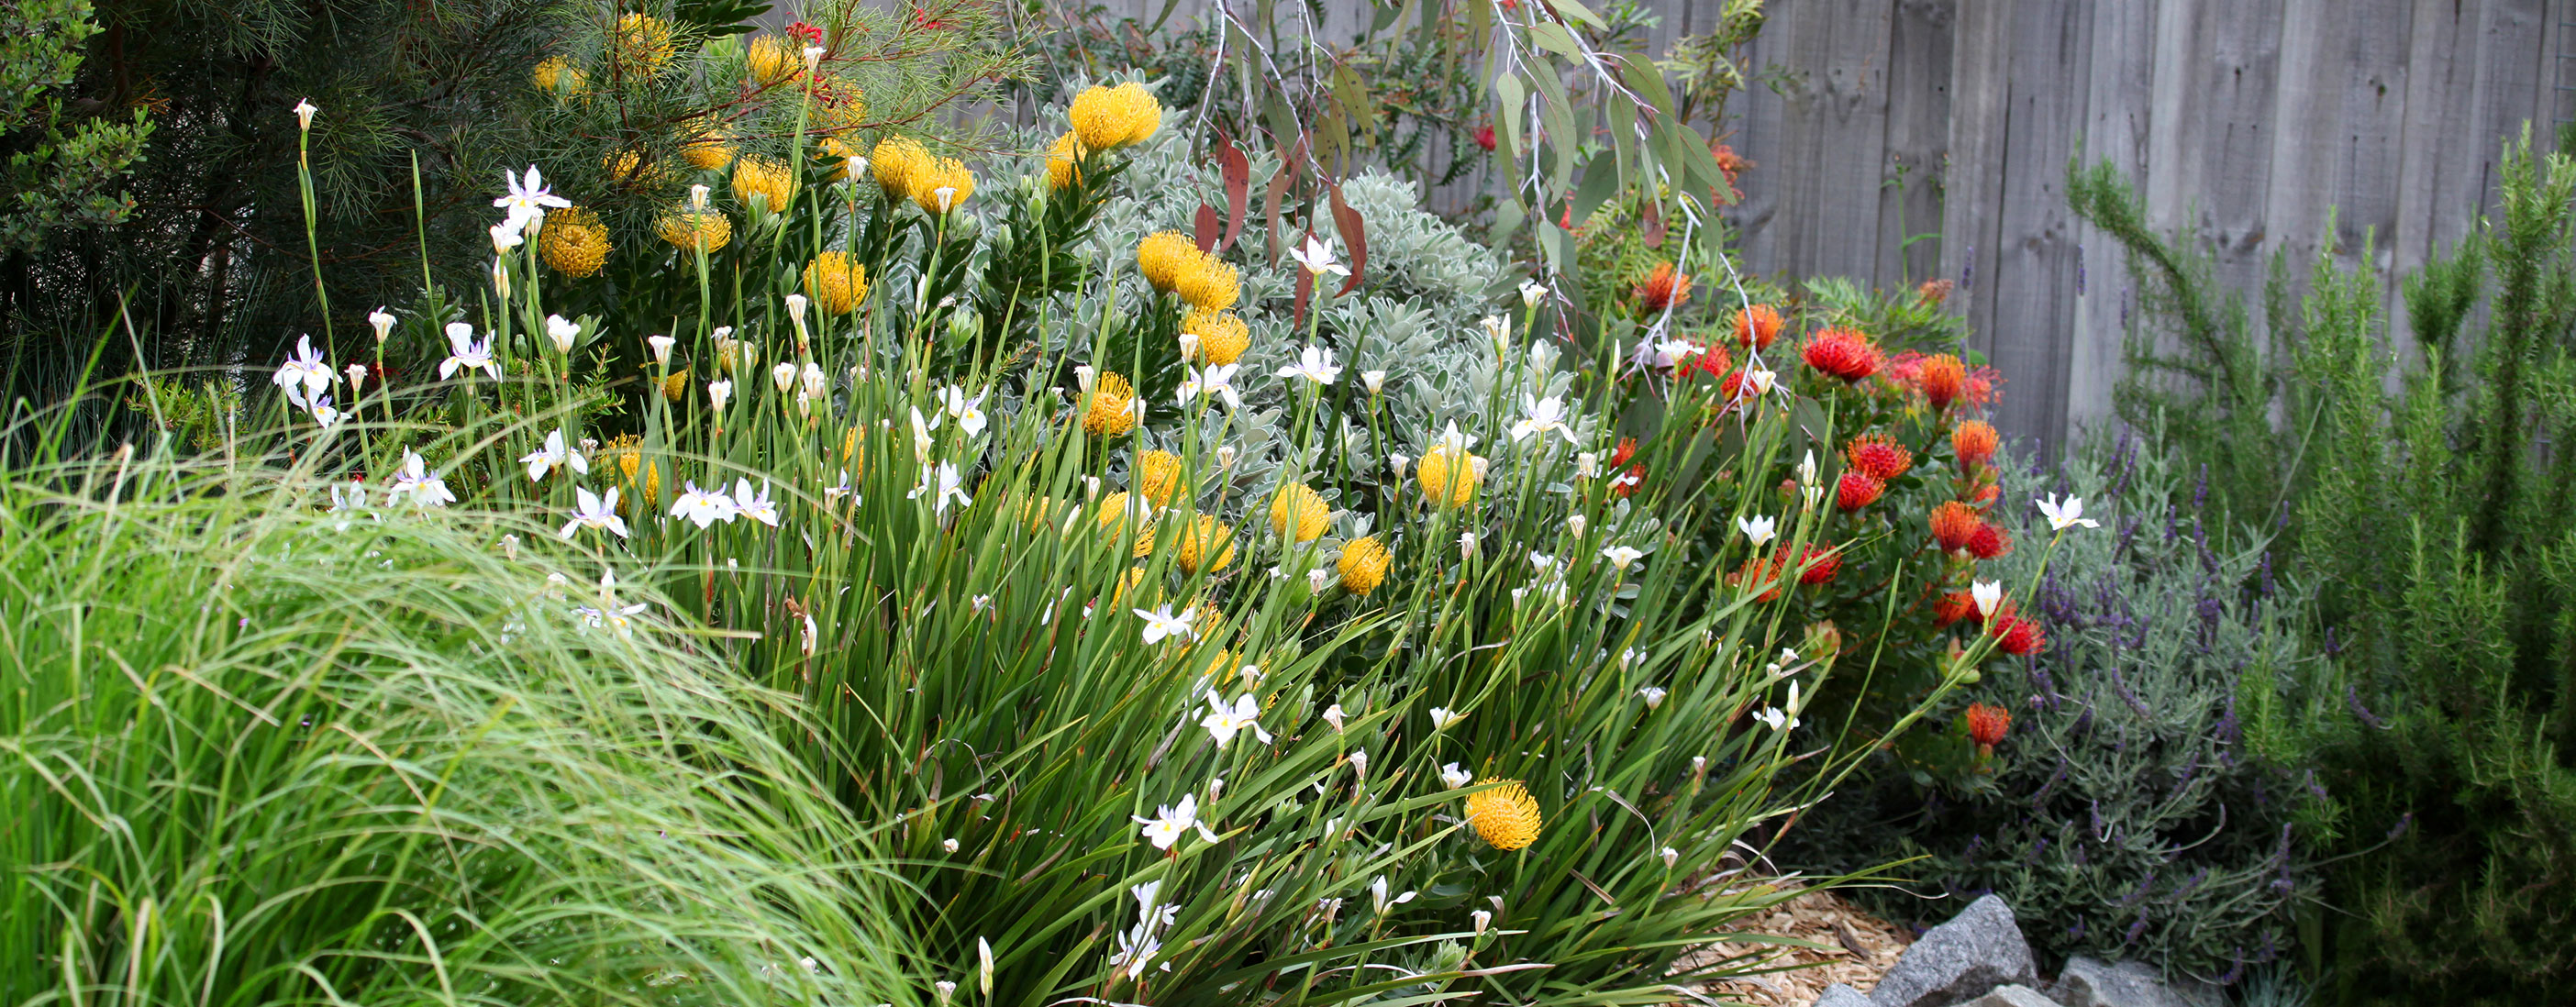 Photograph of Australian native garden